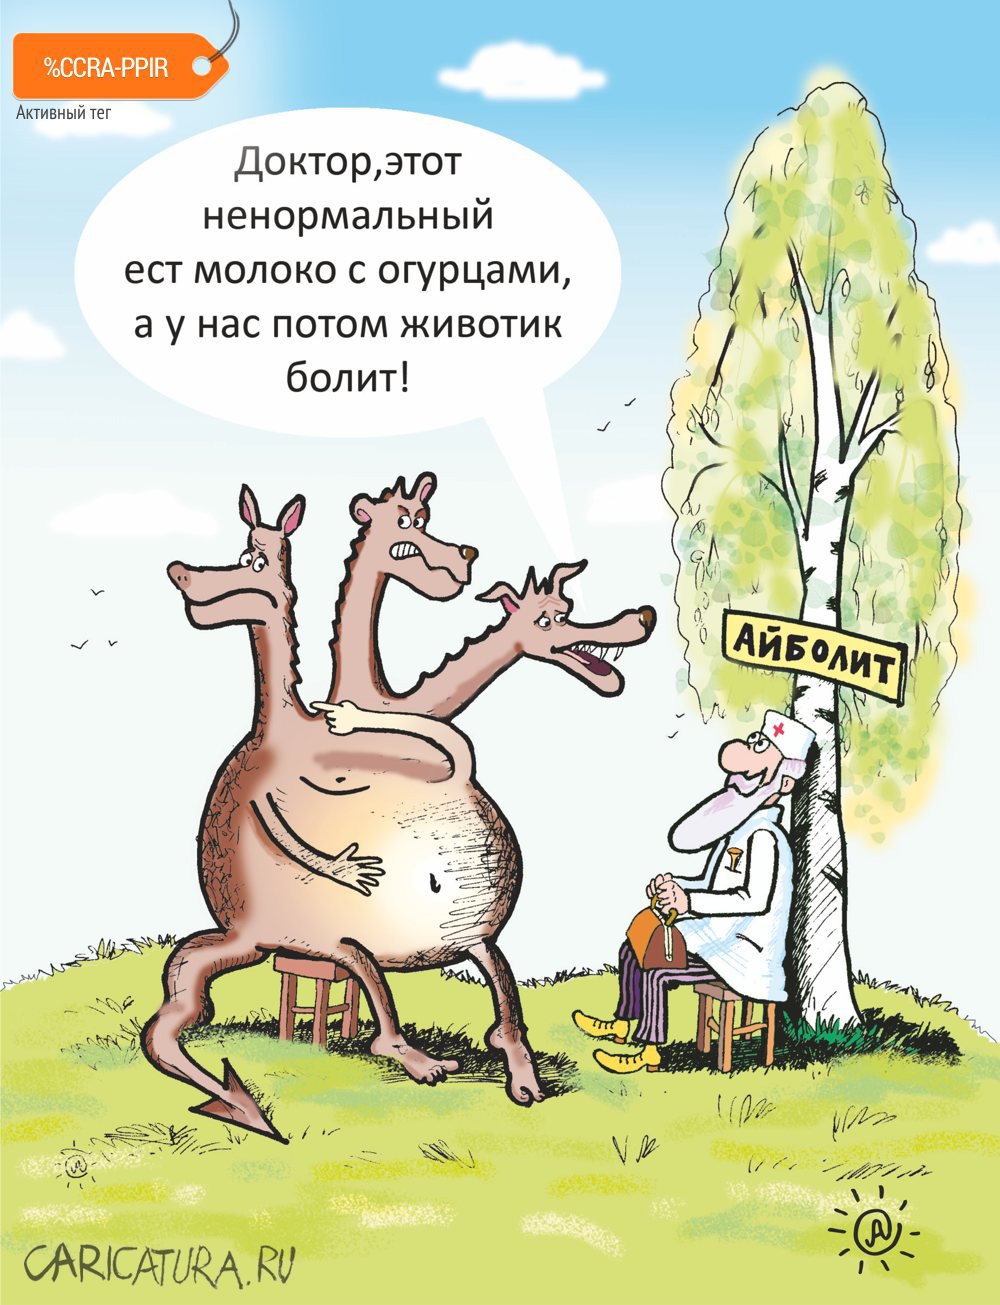 Карикатура "Мы все - единый организм", Павел Атаманчук